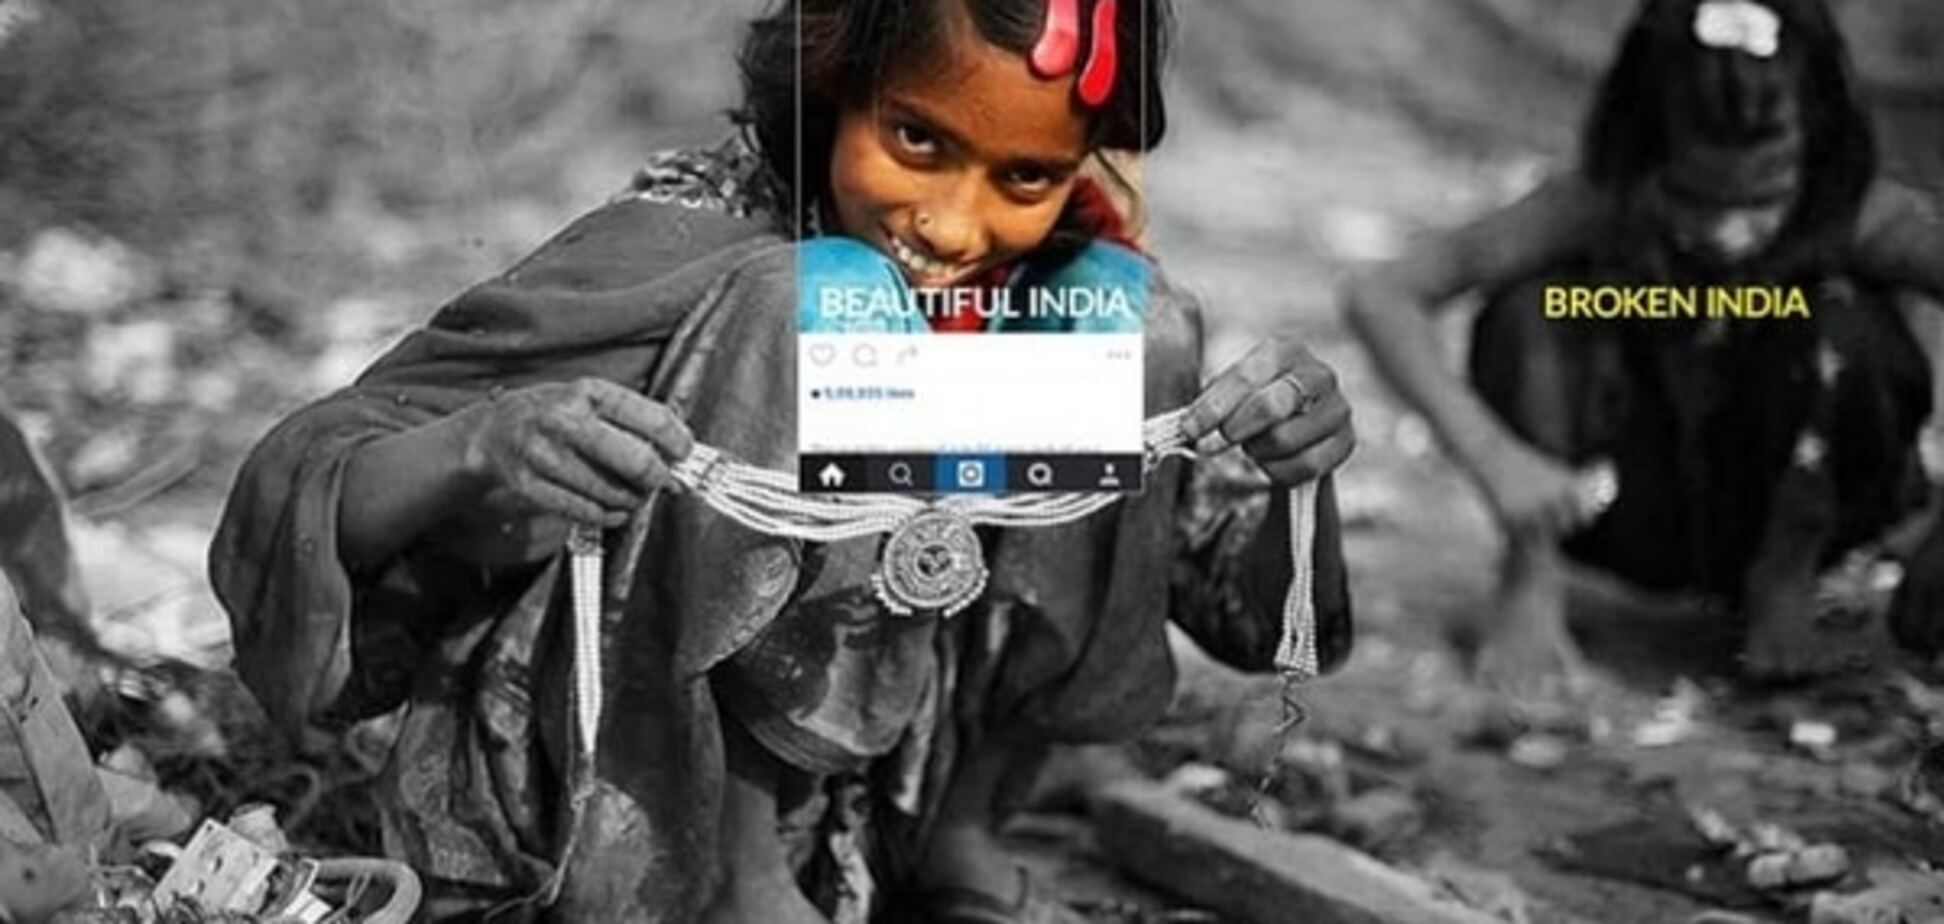 Фото не для всех: печальная реальность Индии, которая скрывается за яркой ширмой